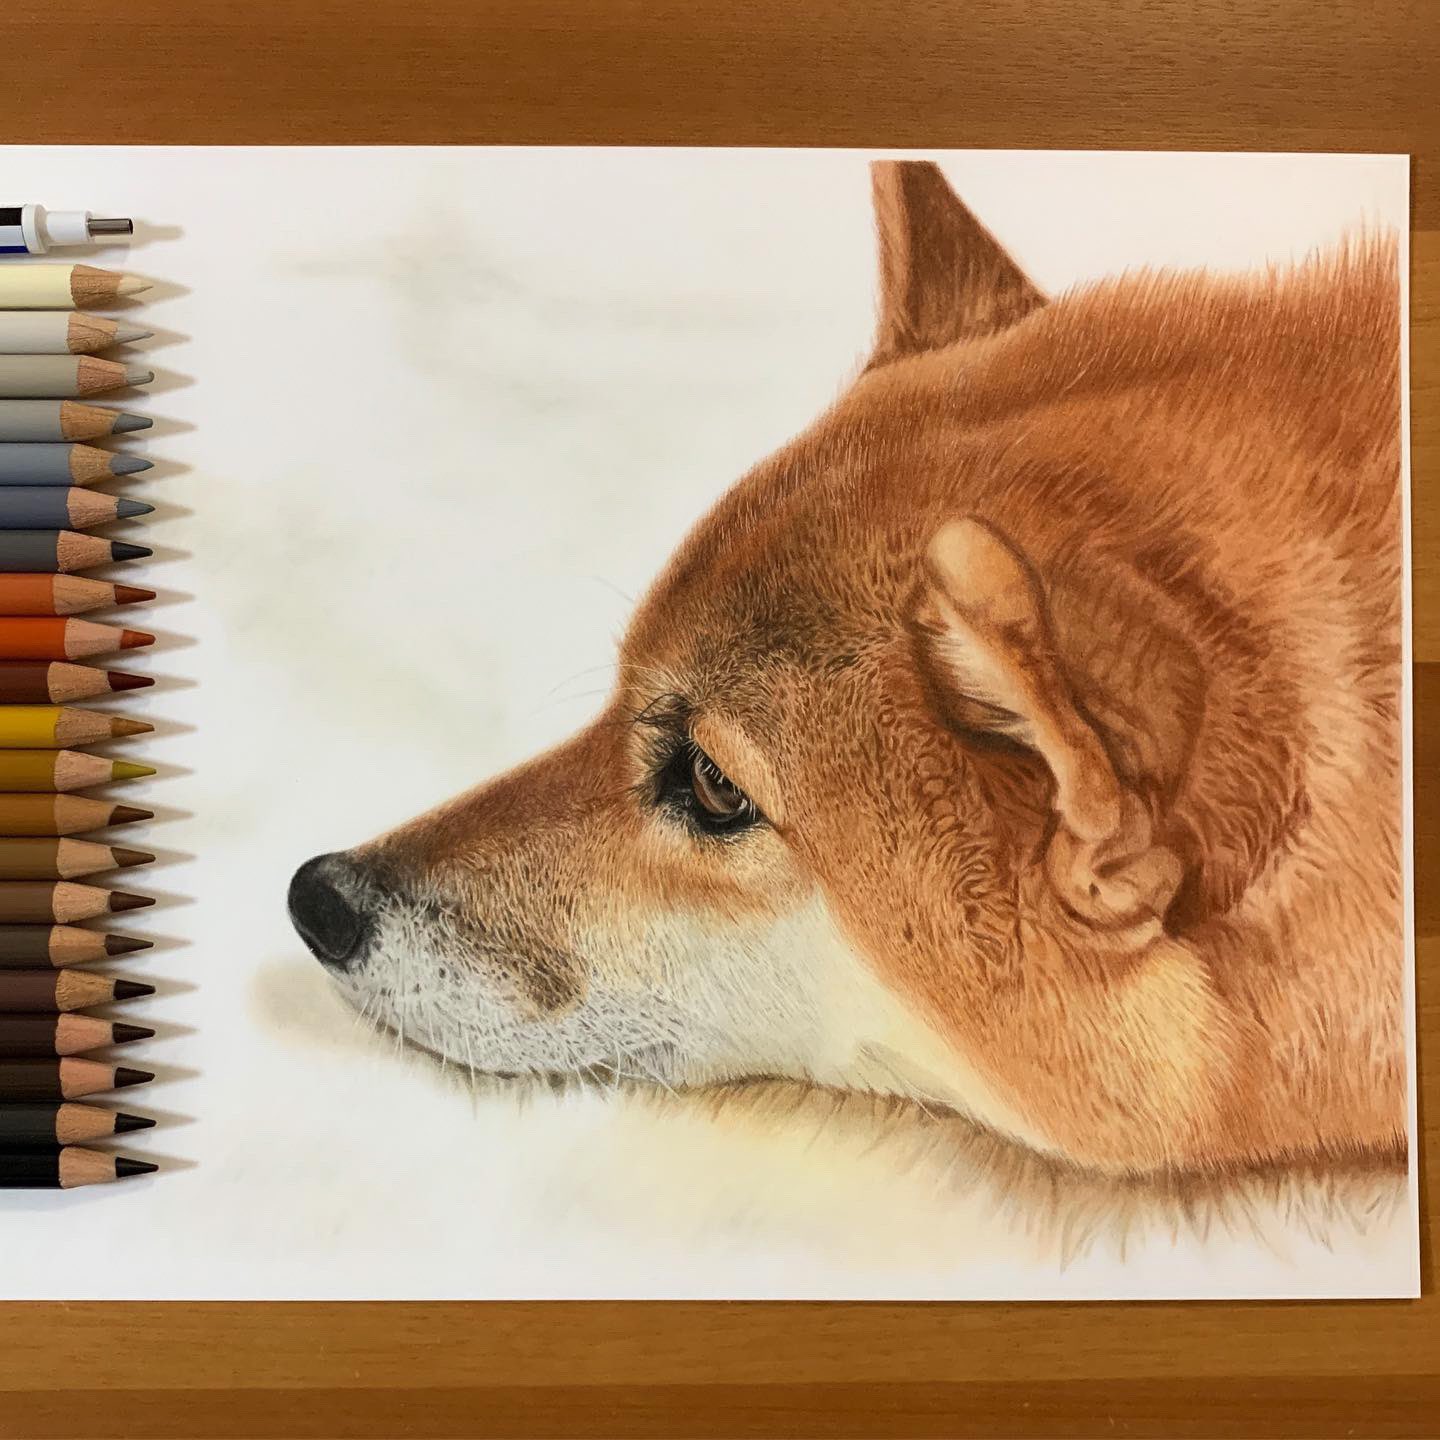 ここまる 著書 超絶リアルな色鉛筆画のテクニック 好評販売中 Cocomaru S Twitter